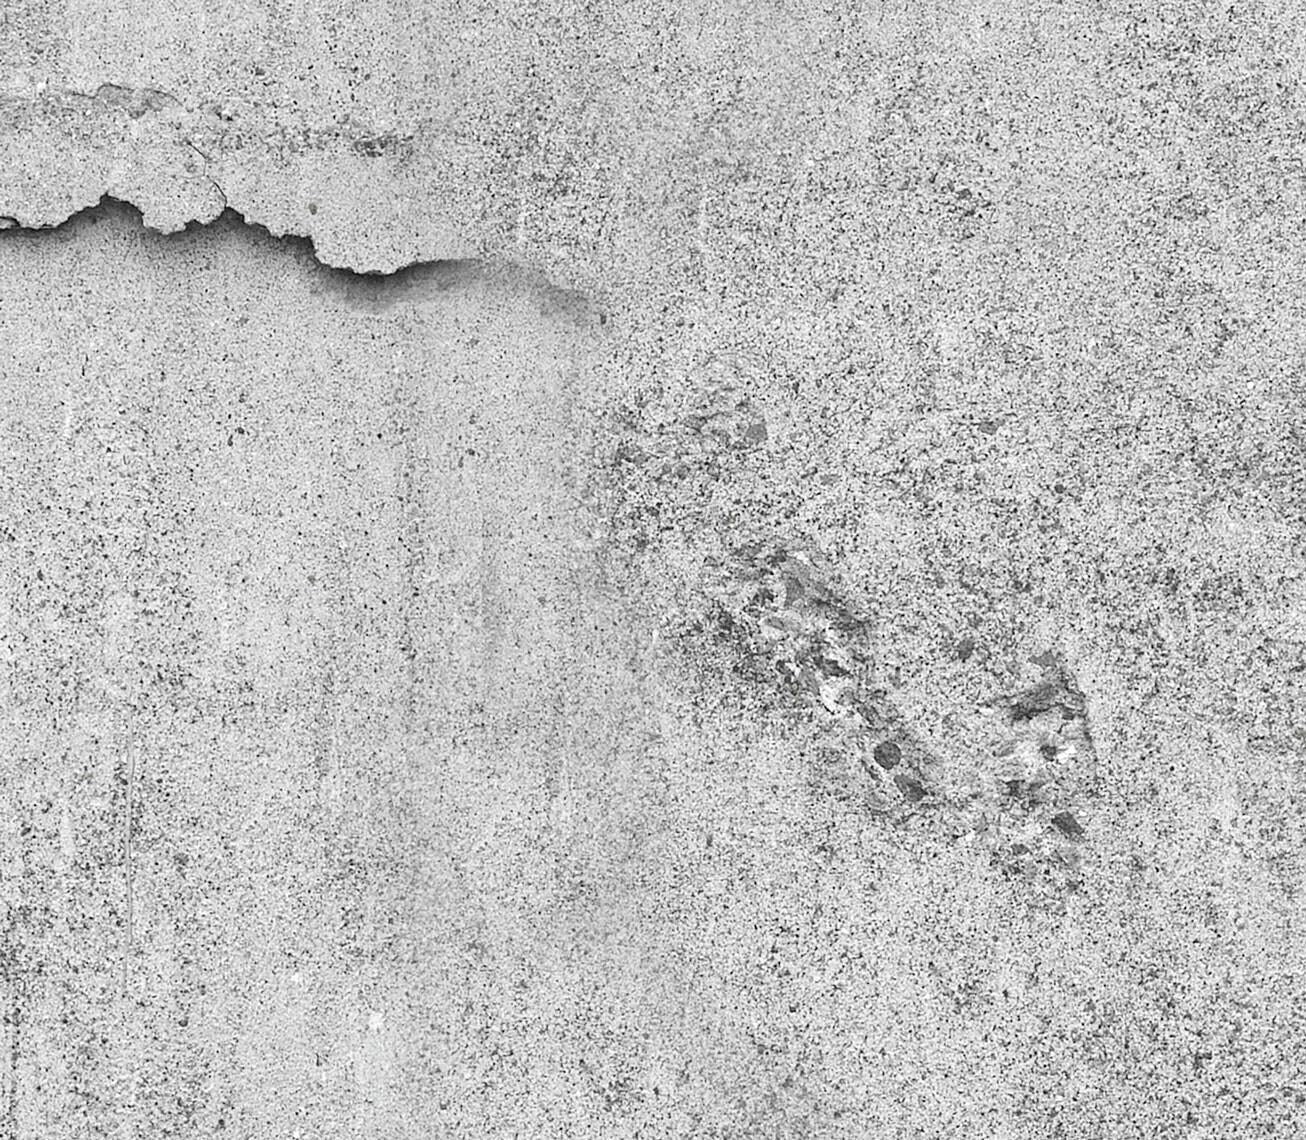 Concrete Wall E020401-8 Mr. Perswall Wallpaper